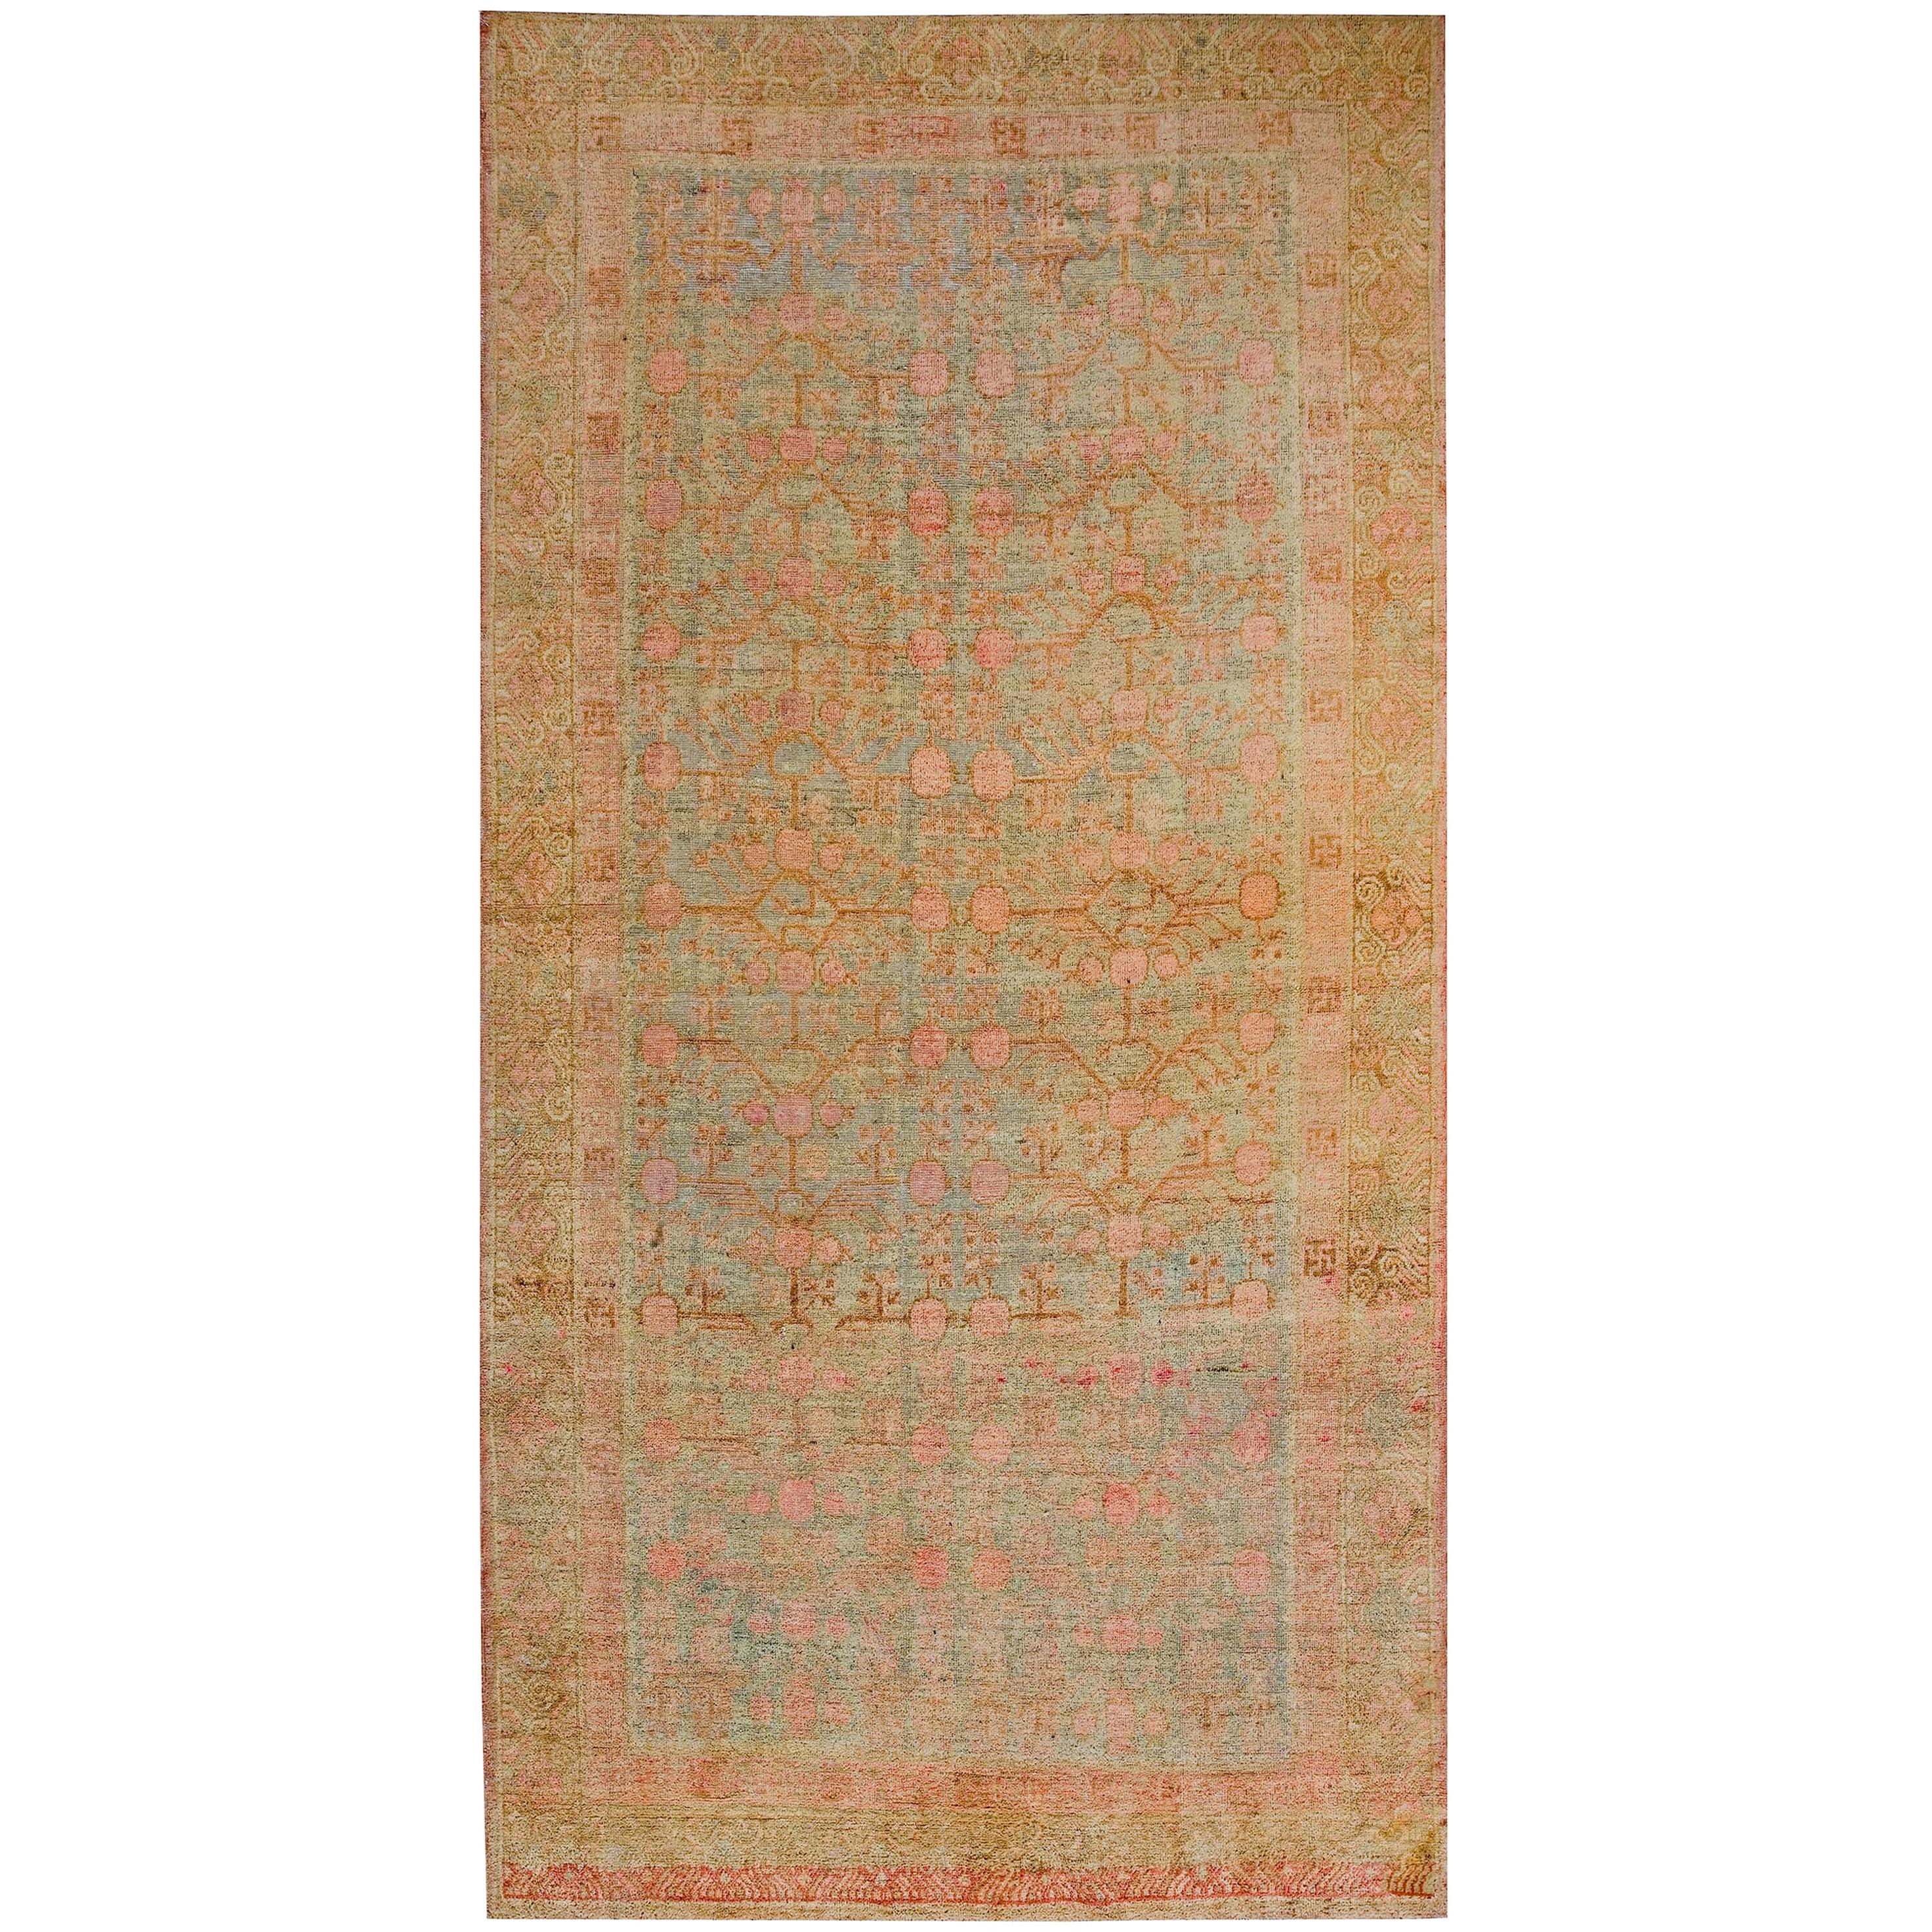 Zentralasiatischer Khotan-Teppich des frühen 20. Jahrhunderts ( 5'10"" x 11'8" - 178 x 355 cm)